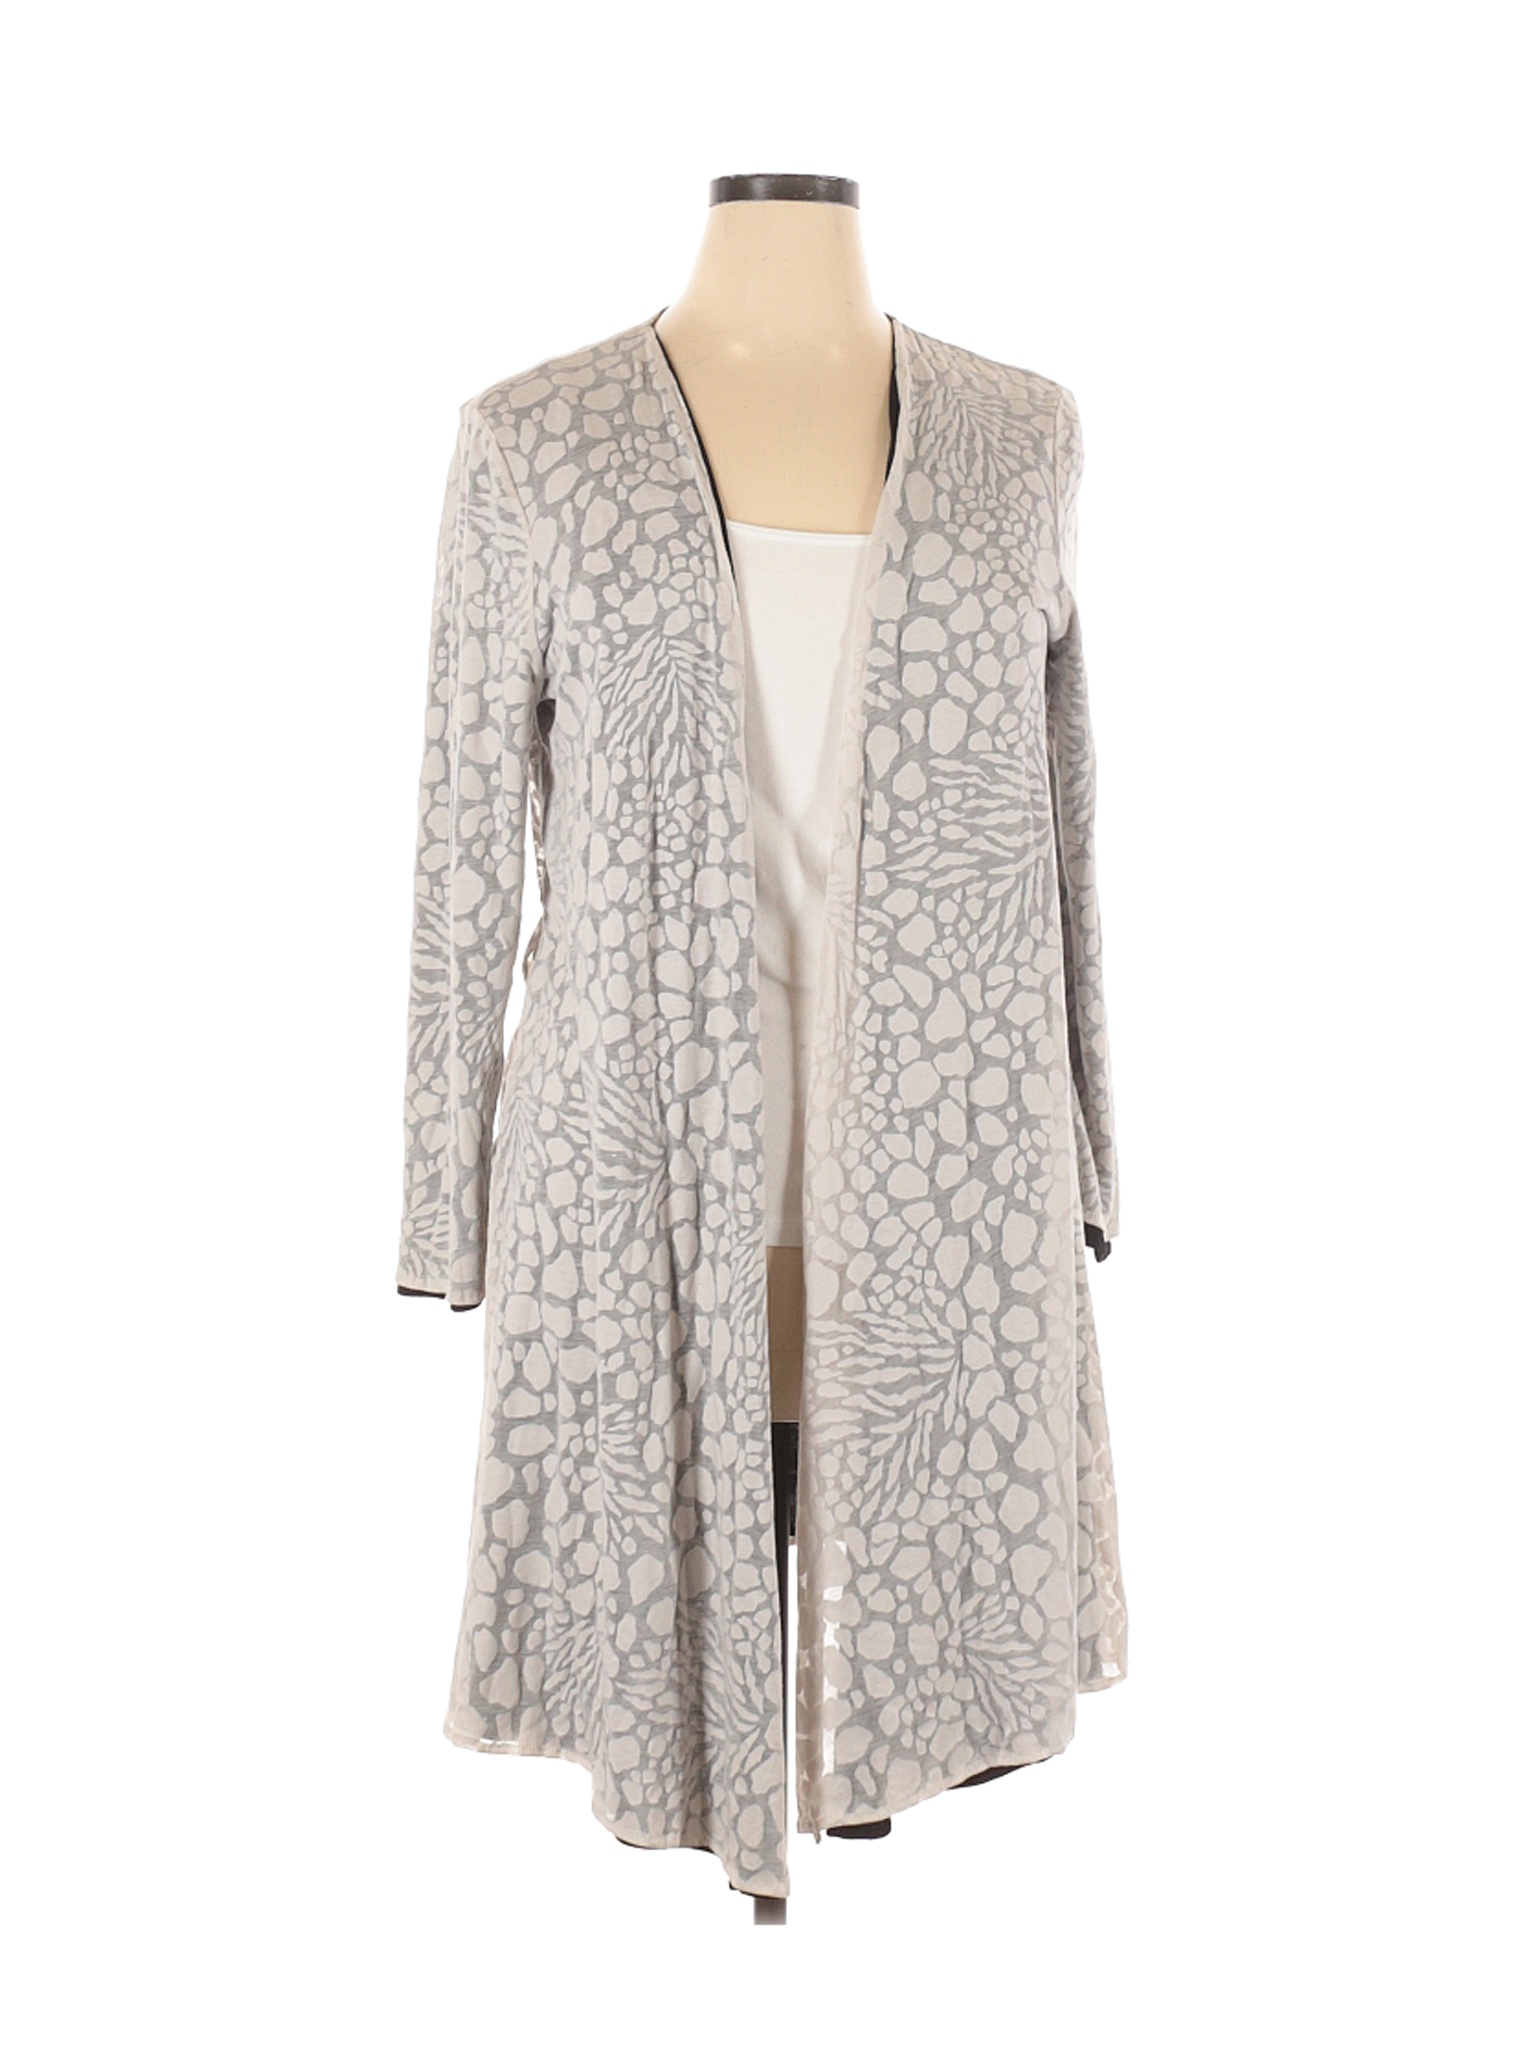 NWT Marla Wynne Women Gray Cardigan XL | eBay